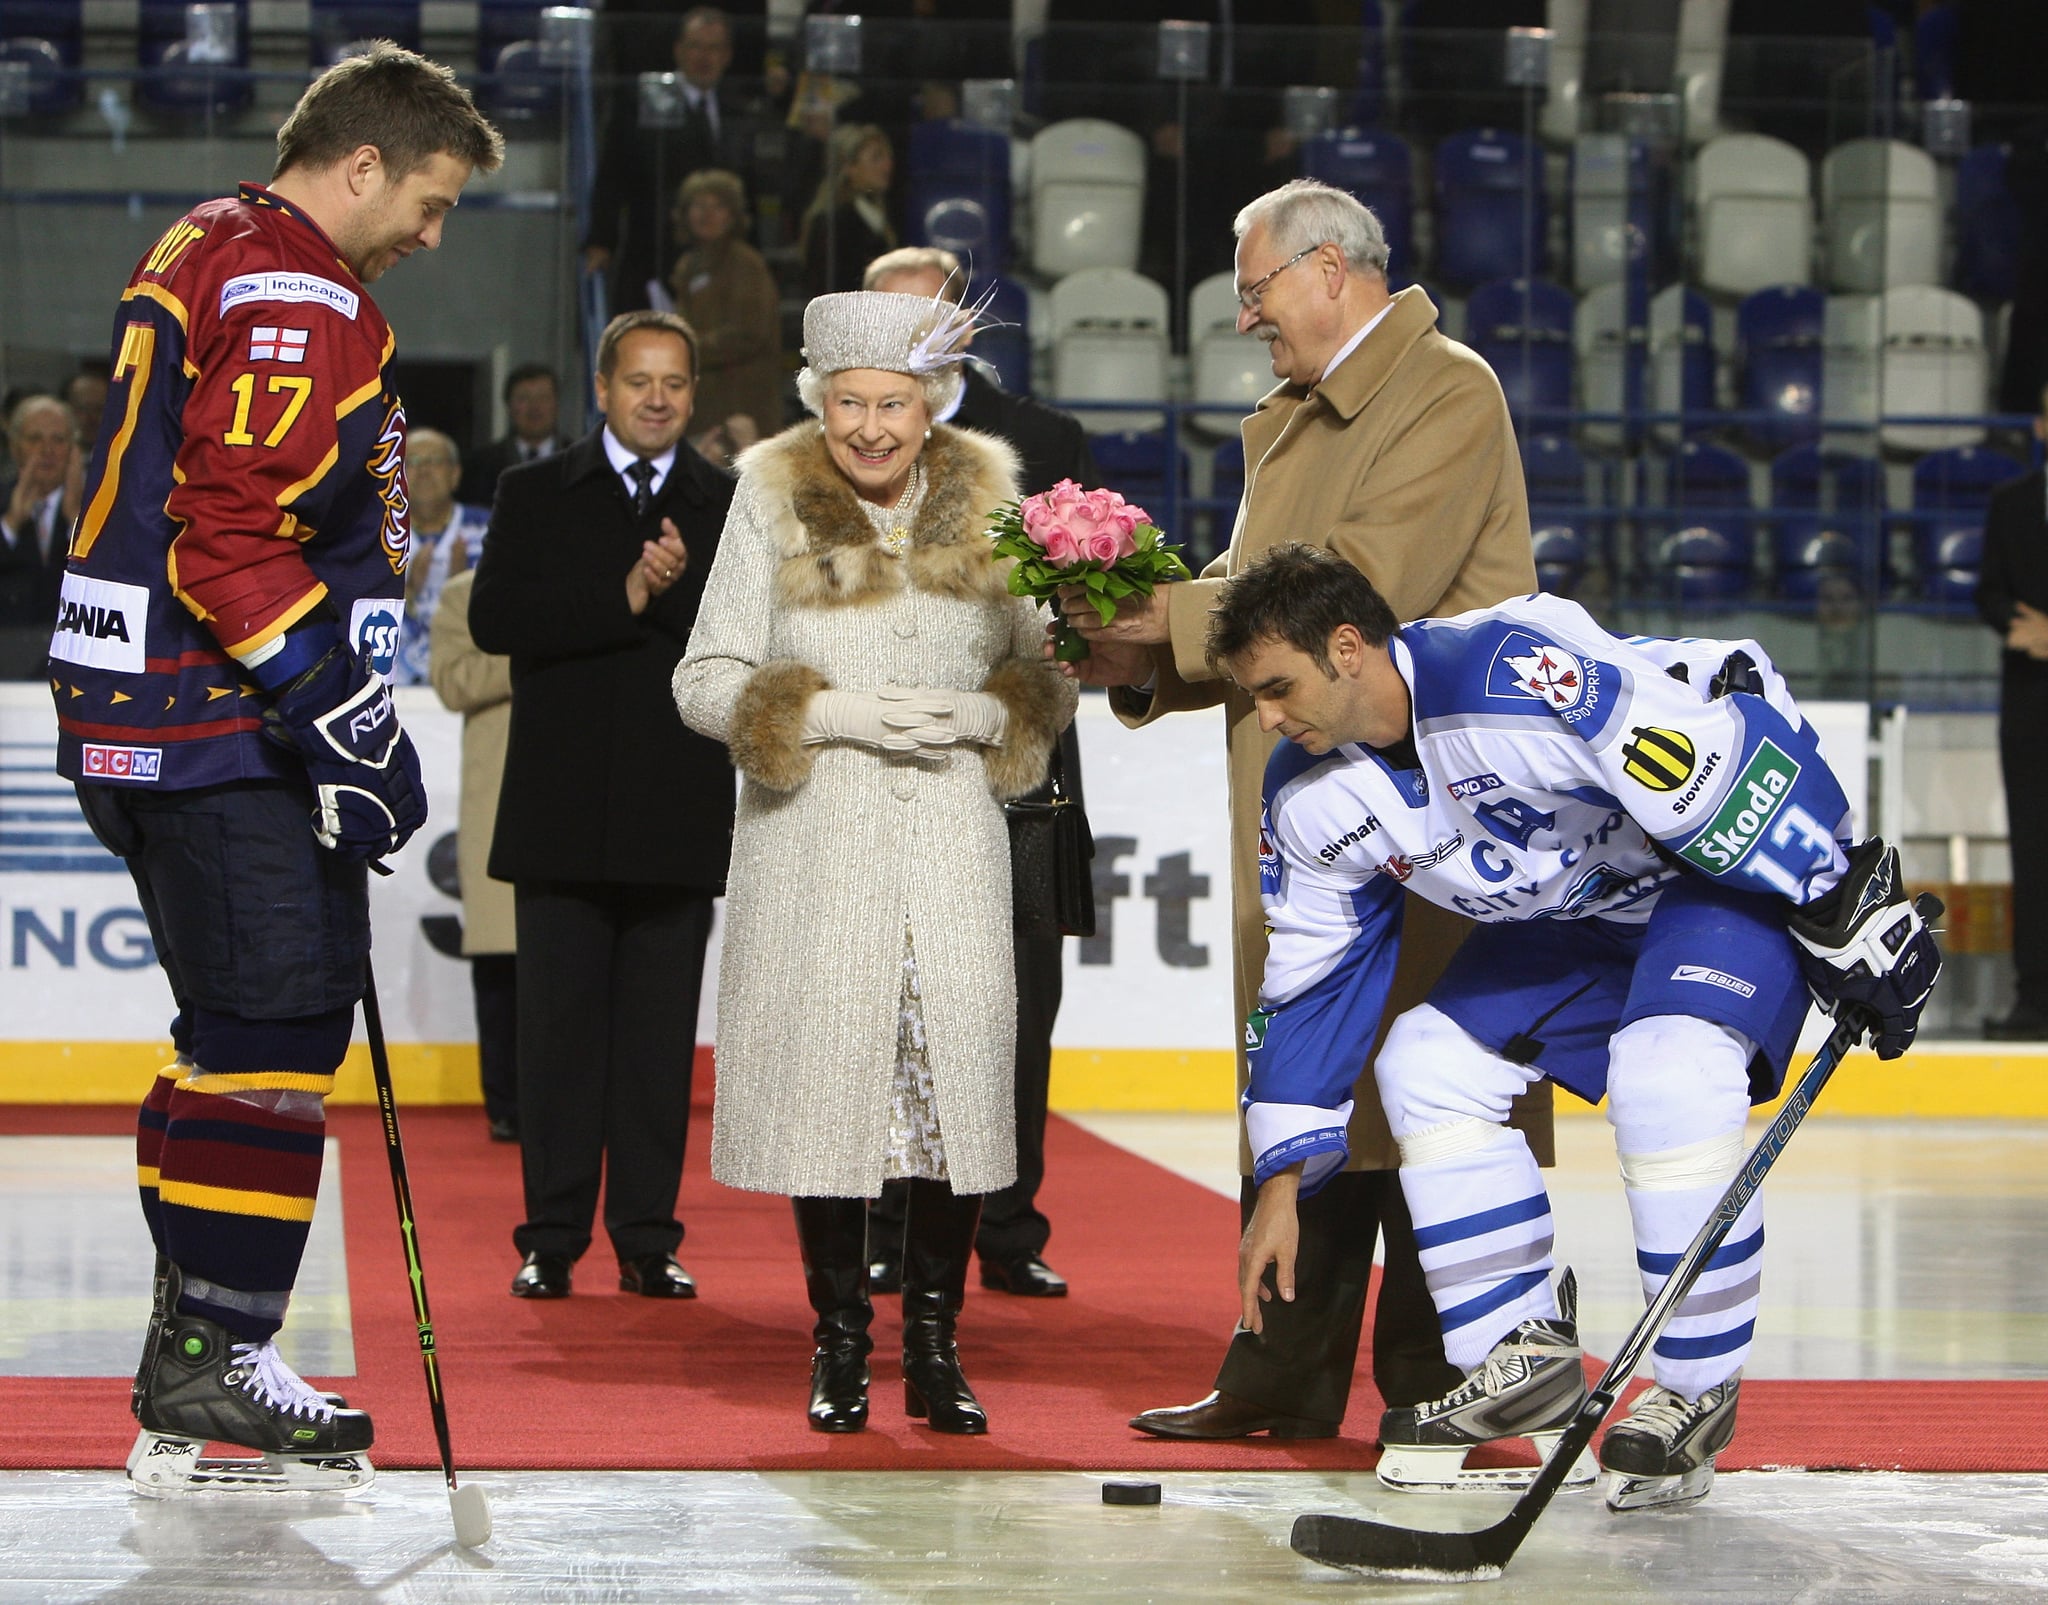 Queen Elizabeth II takes in a Slovakian hockey game in 2008